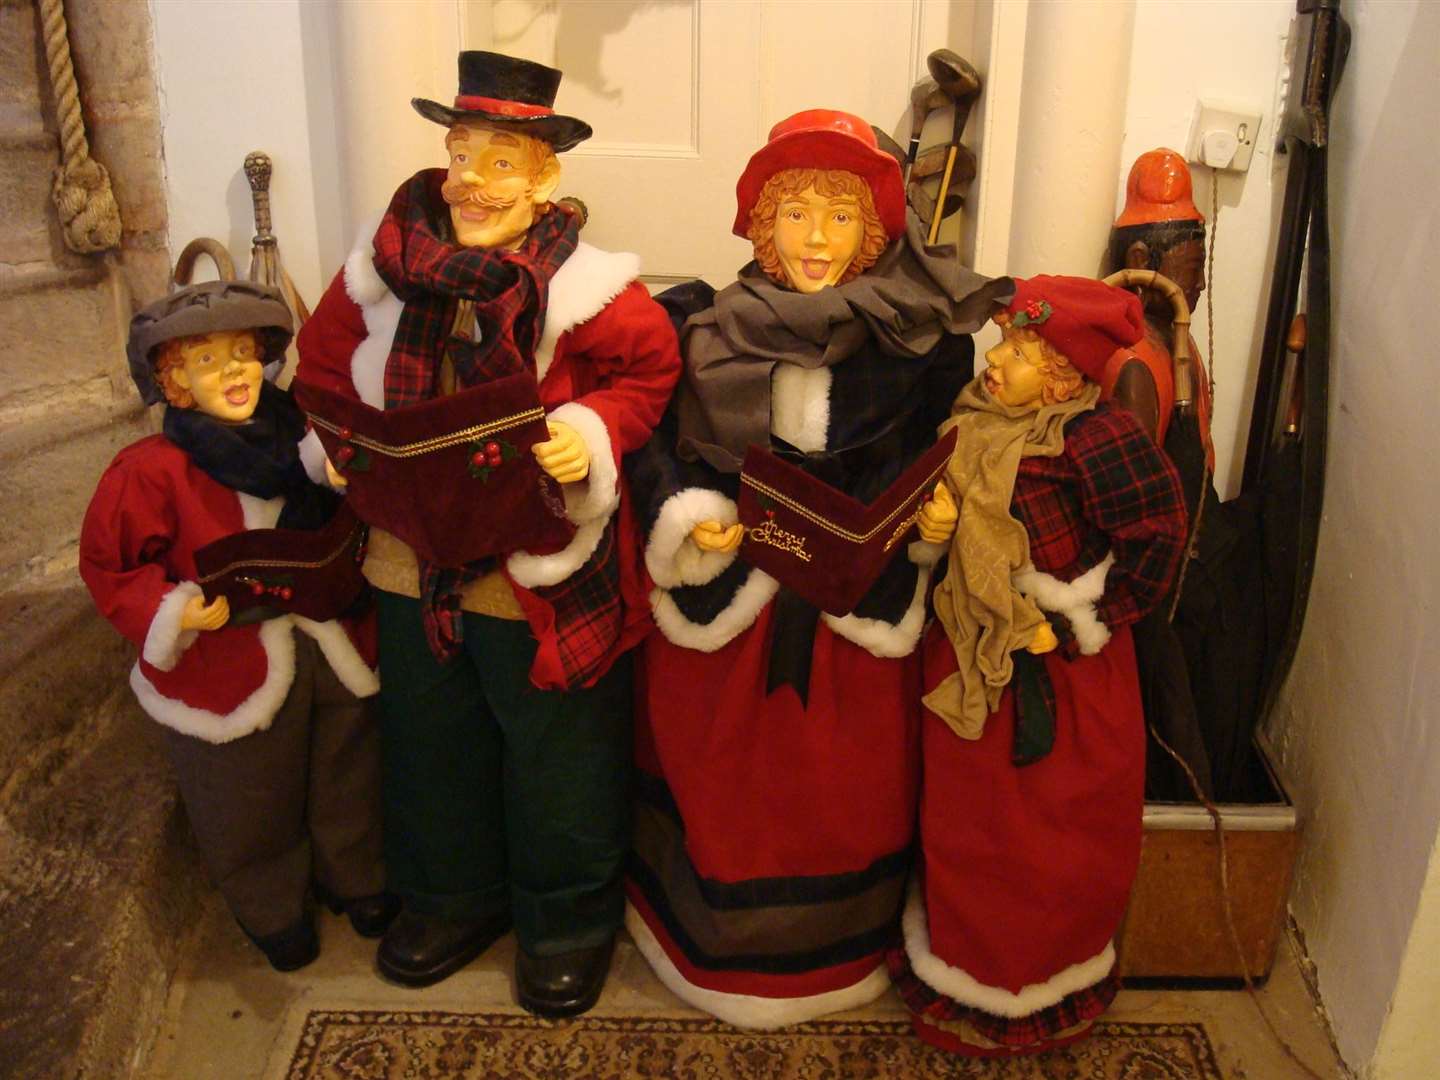 A Victorian Christmas returns to Delgatie Castle